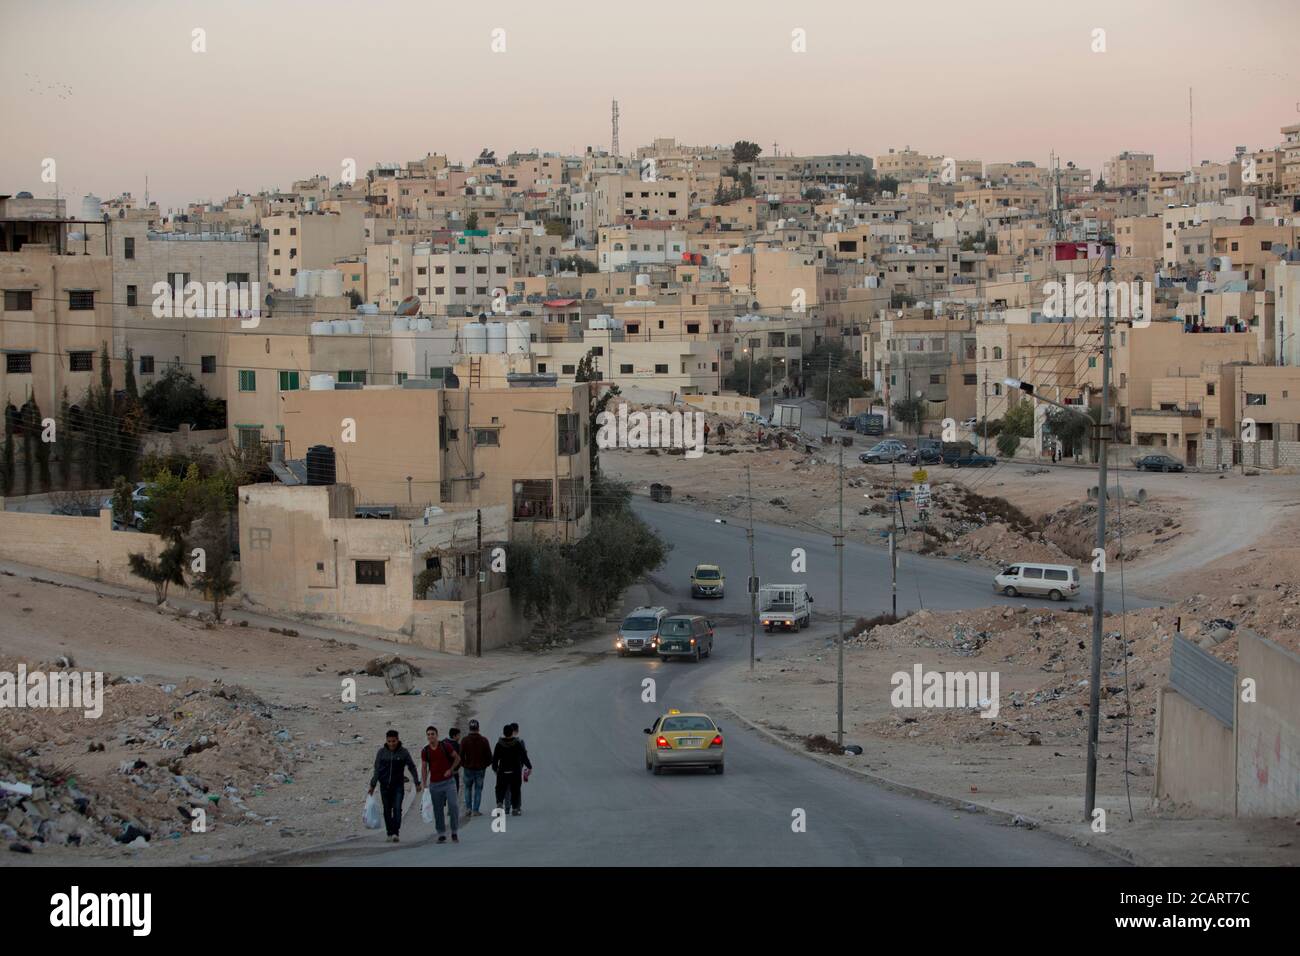 Sprawling neighborhood in the city of Zarqa, Jordan Stock Photo - Alamy